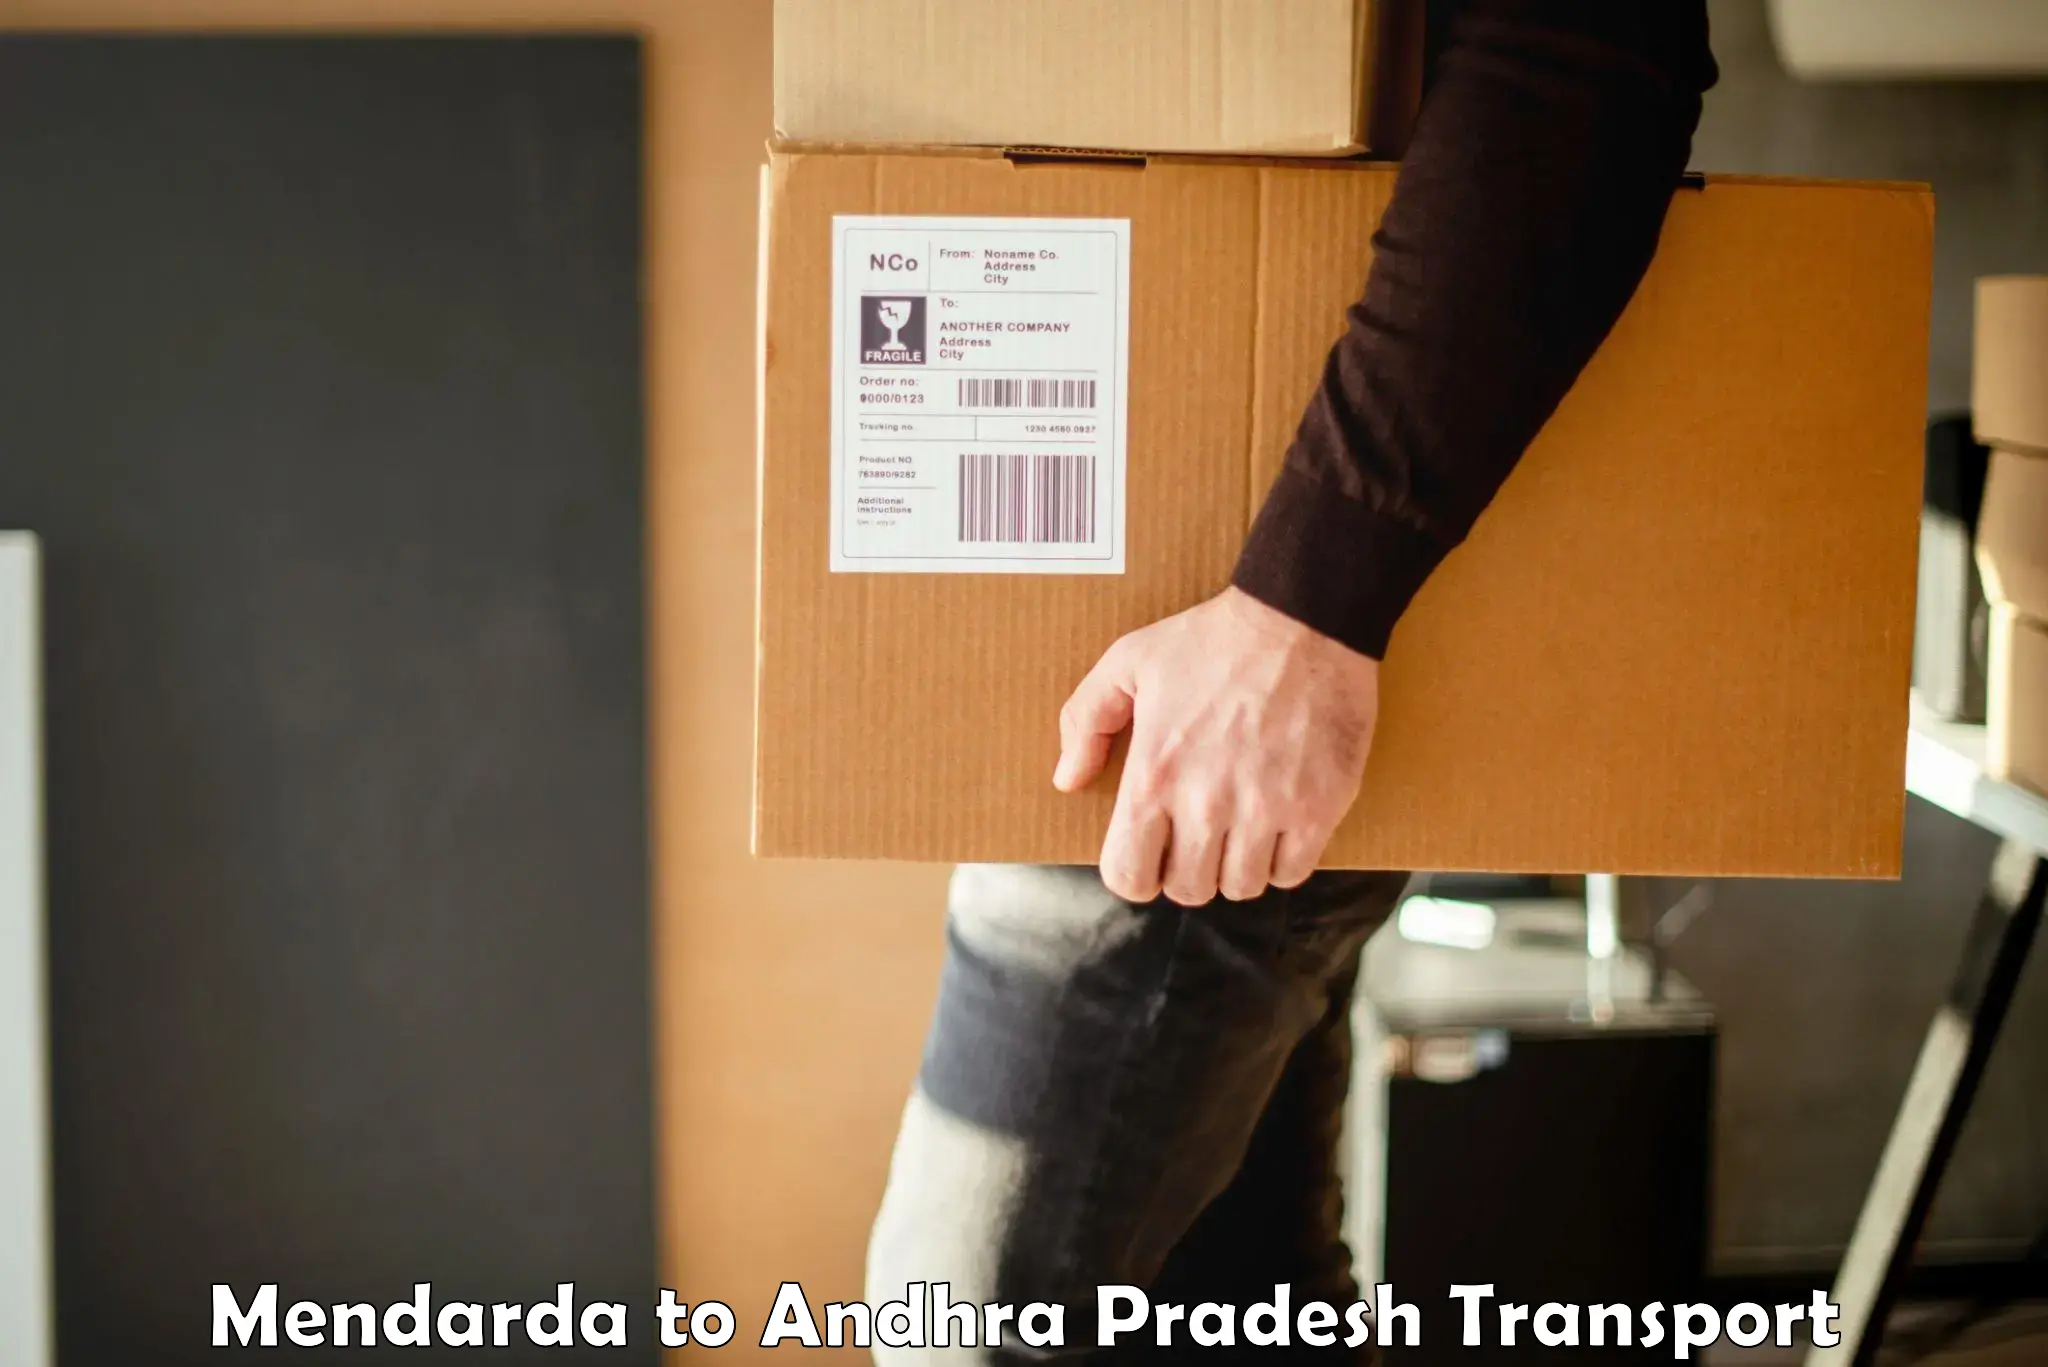 Online transport service Mendarda to Tripuranthakam